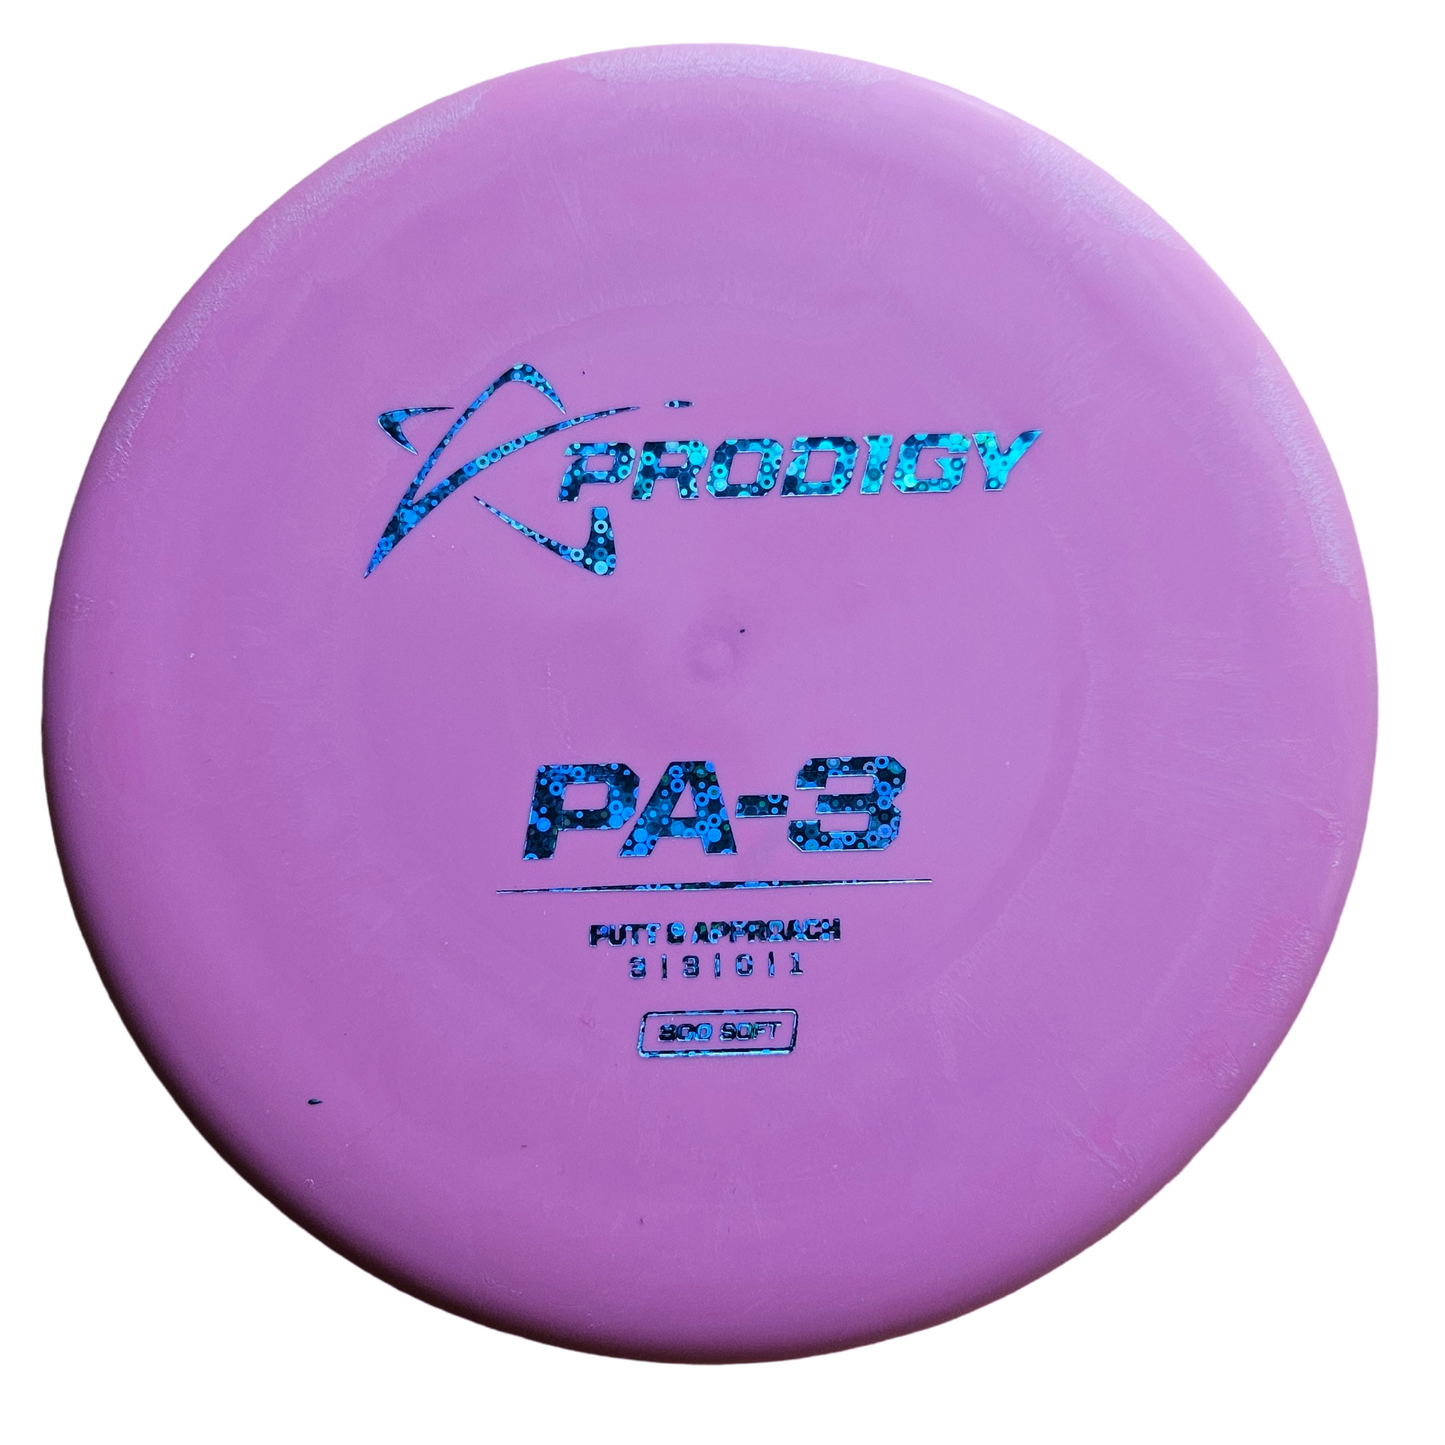 Prodigy PA-3  300 Soft plastic